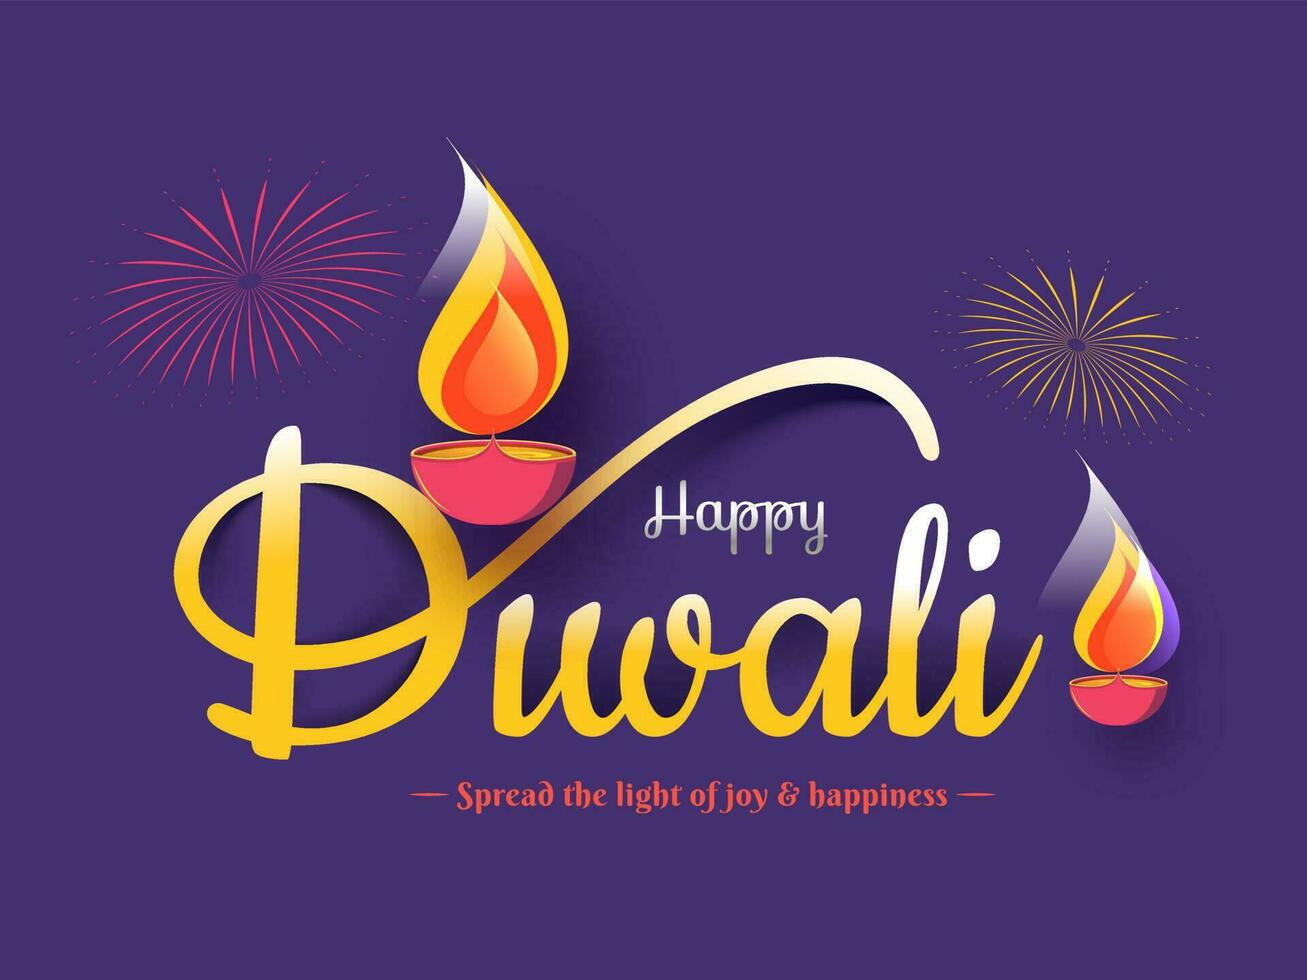 caligrafia do feliz diwali com iluminado óleo lâmpadas e dado mensagem para você Como espalhar a luz do alegria felicidade em roxa fundo. vetor